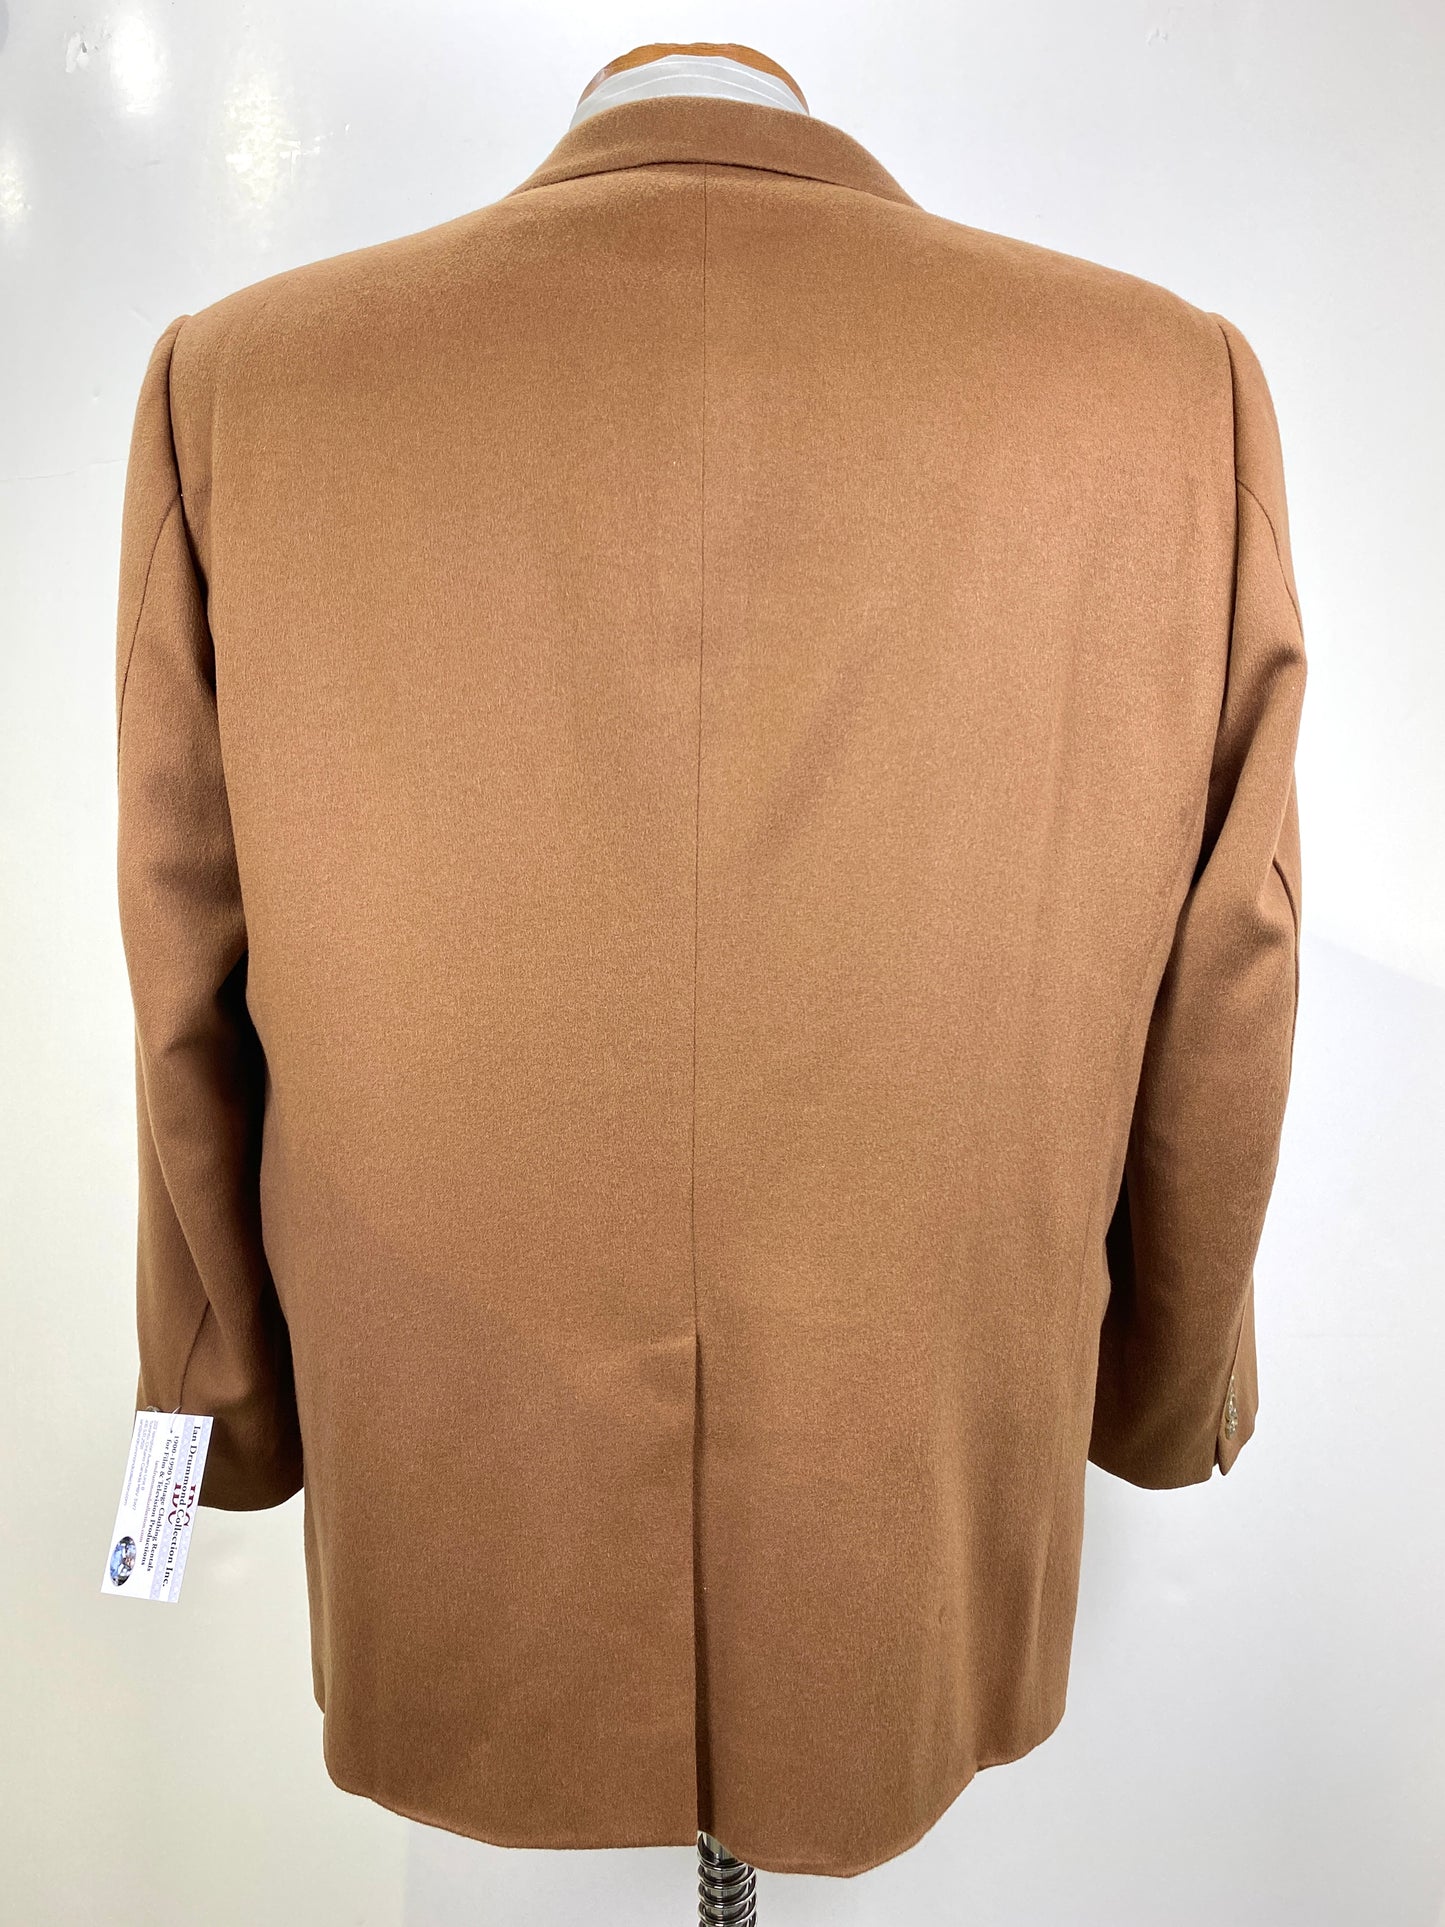 1980s Vintage Men's Brown Cashmere/ Vicuna Blazer, Paris Tailors Jacket, C44R